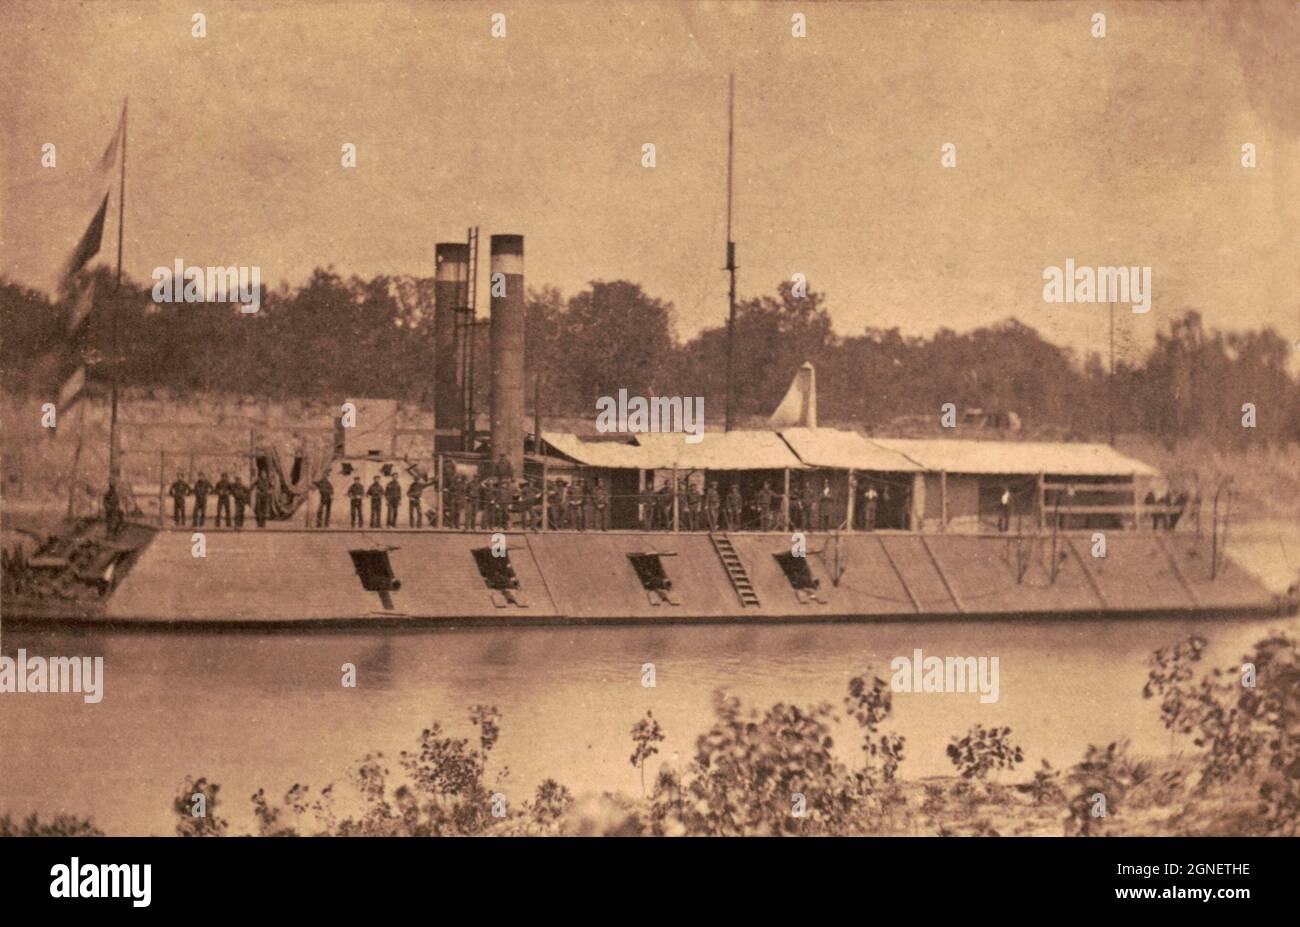 Vintage-Fotografie um 1864 Eisengekleidetes Kanonenboot USS Louisville auf dem Red River. Ein in der City-Klasse ausgerüstetes Paddelrad-Kanonenboot, das James B. EADS während des amerikanischen Bürgerkrieges für die US-Armee gebaut hat Stockfoto